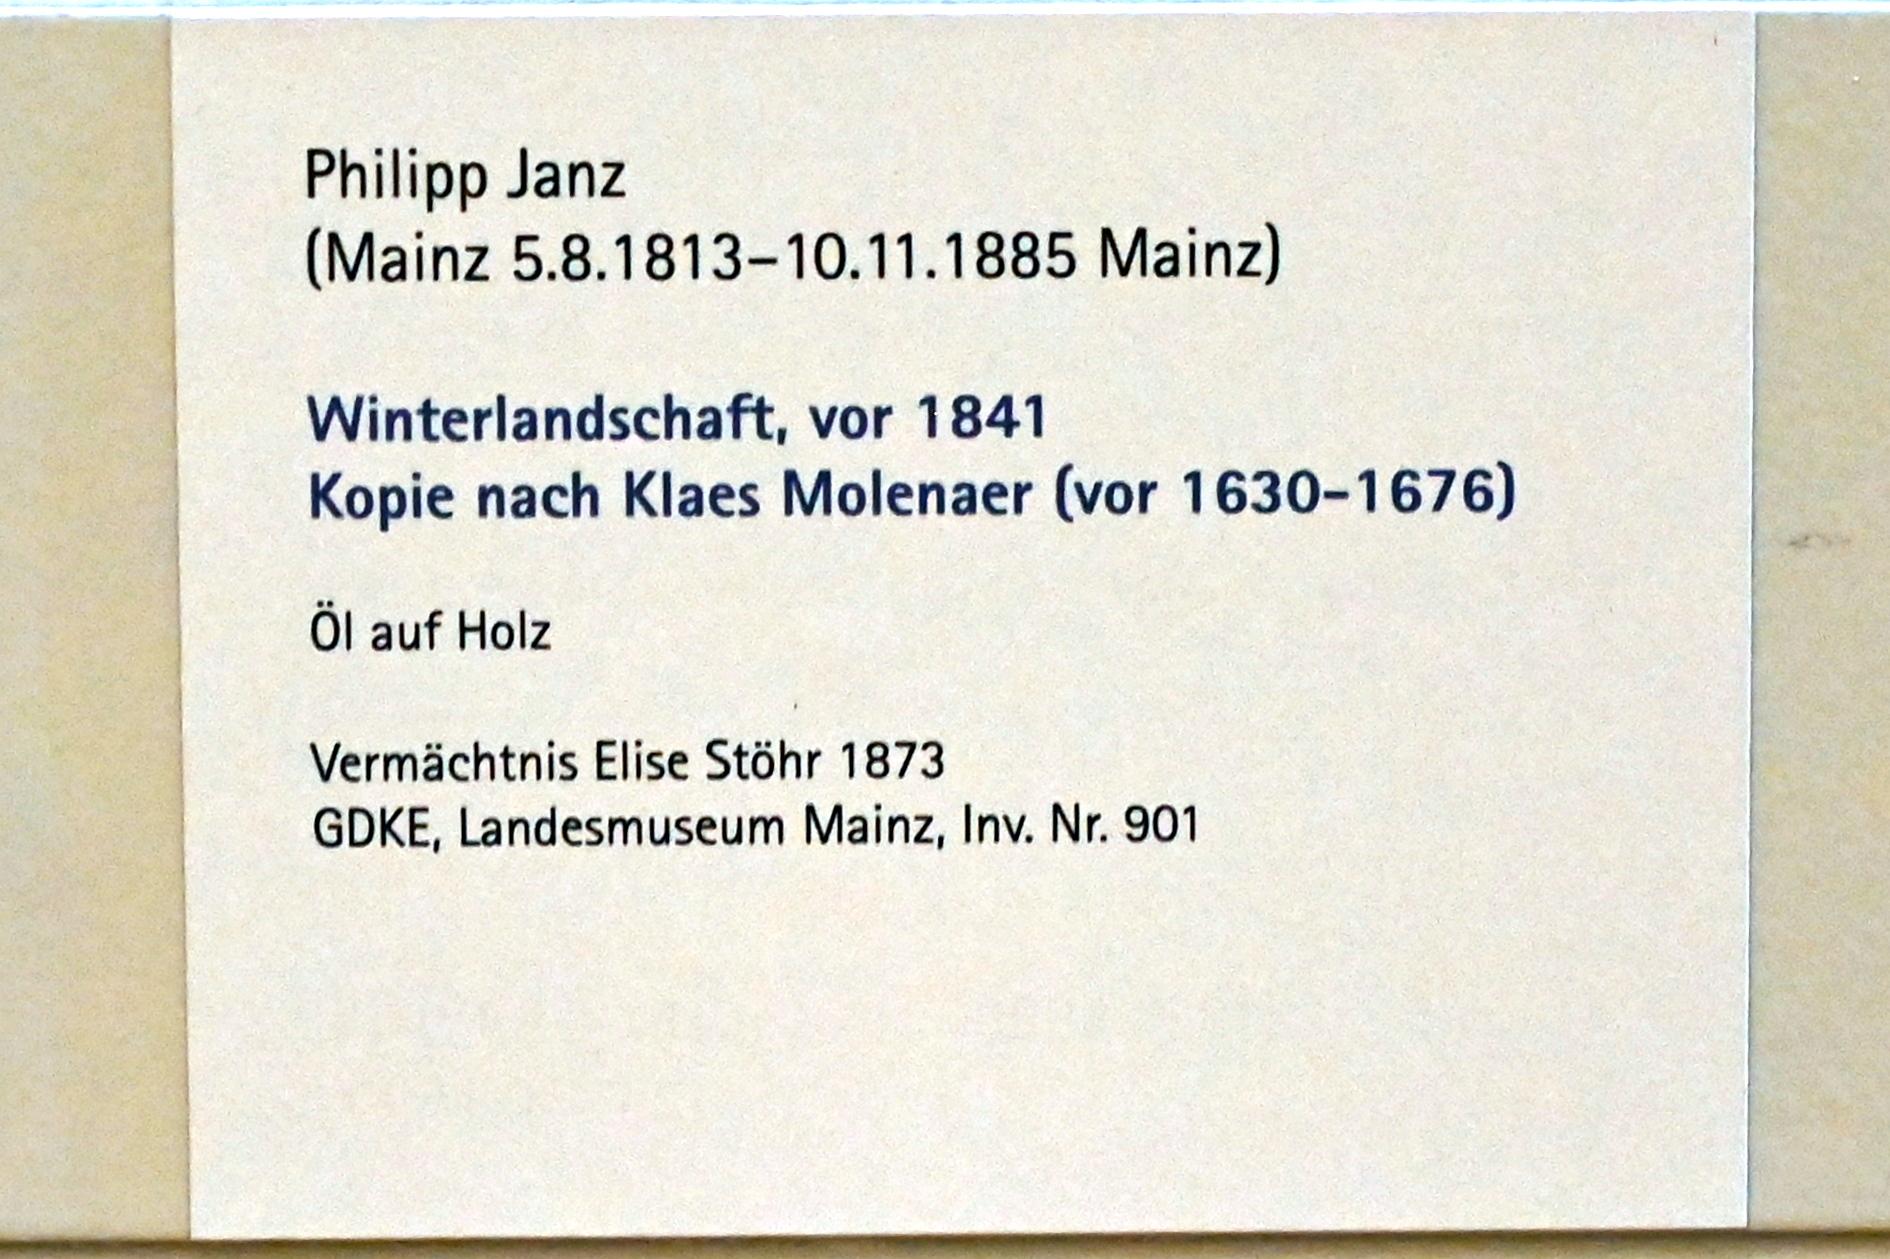 Philipp Janz (1840–1855), Winterlandschaft, Mainz, Landesmuseum, Graphische Sammlung, vor 1841, Bild 2/2